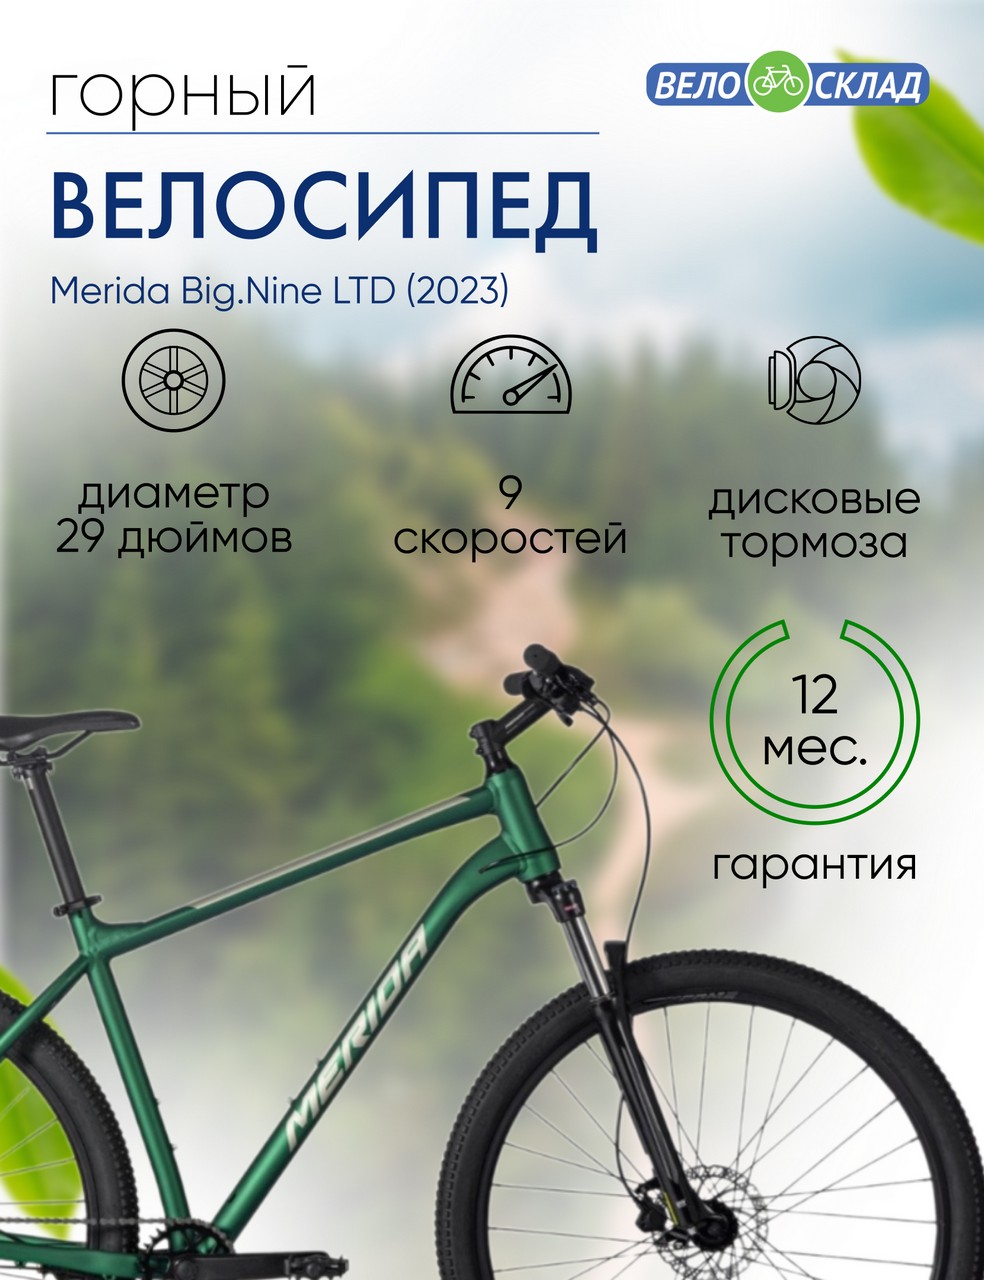 Горный велосипед Merida Big.Nine LTD, год 2023, цвет Зеленый-Серебристый, ростовка 14.5